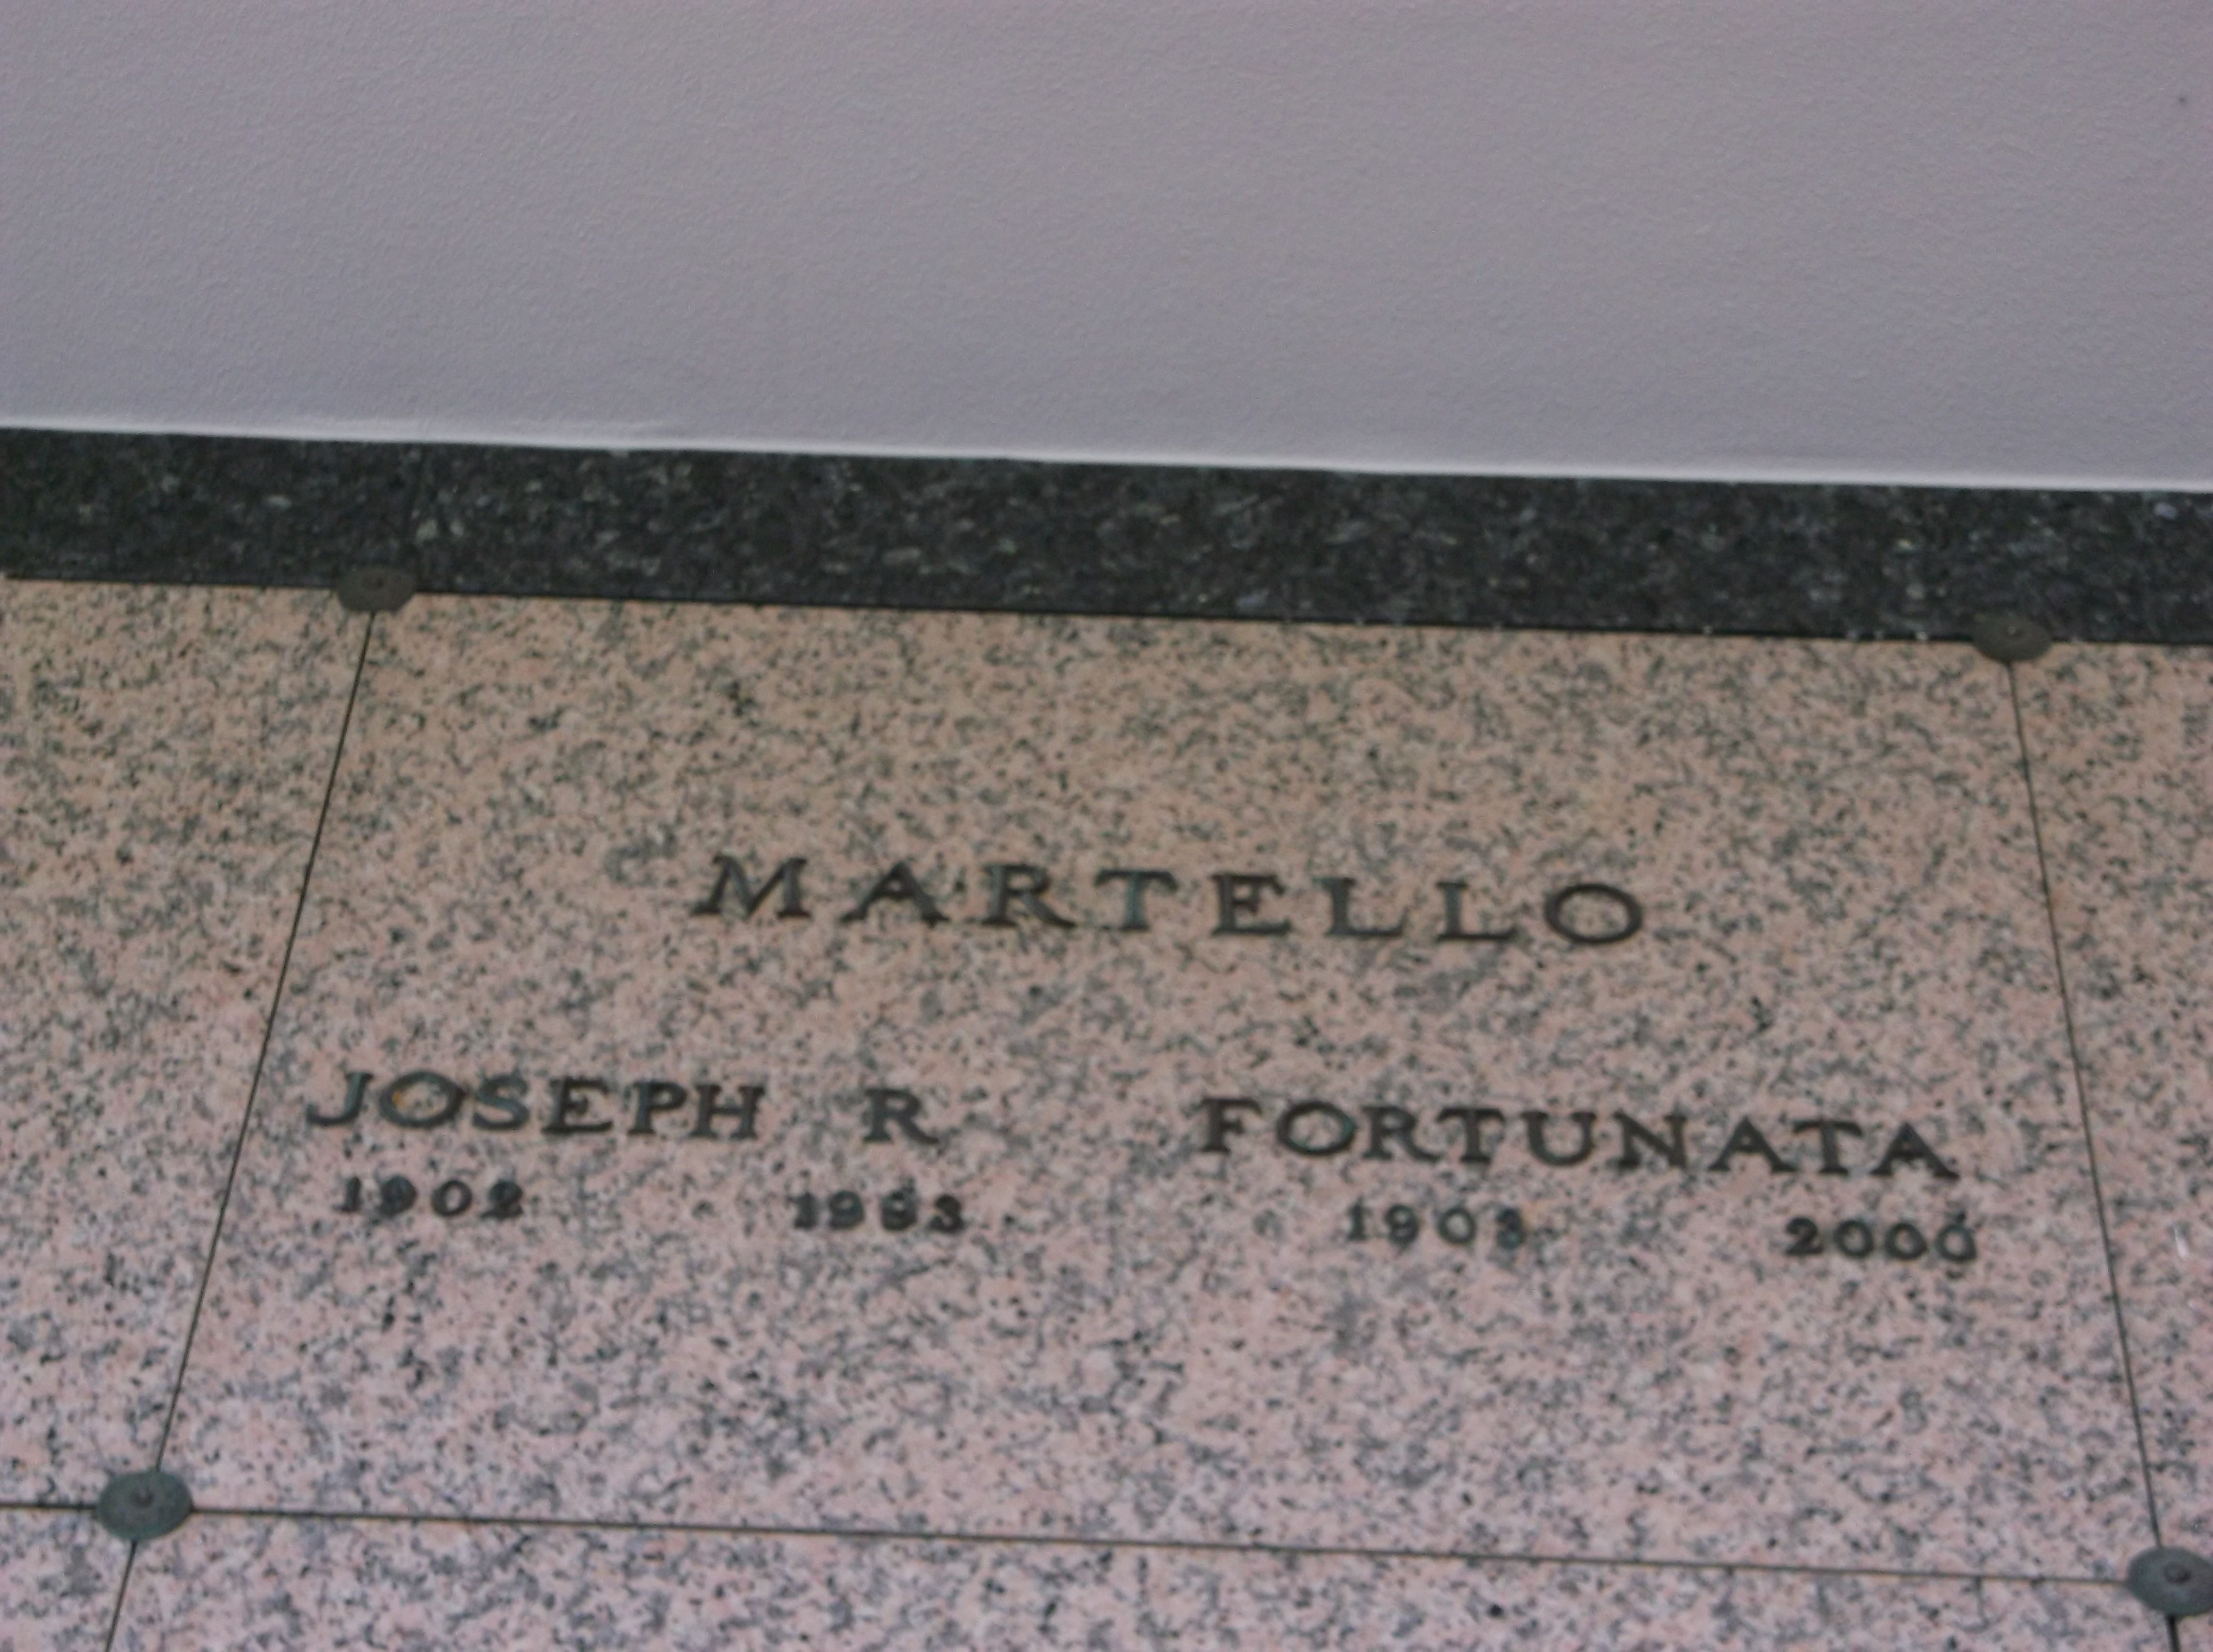 Fortunata Martello